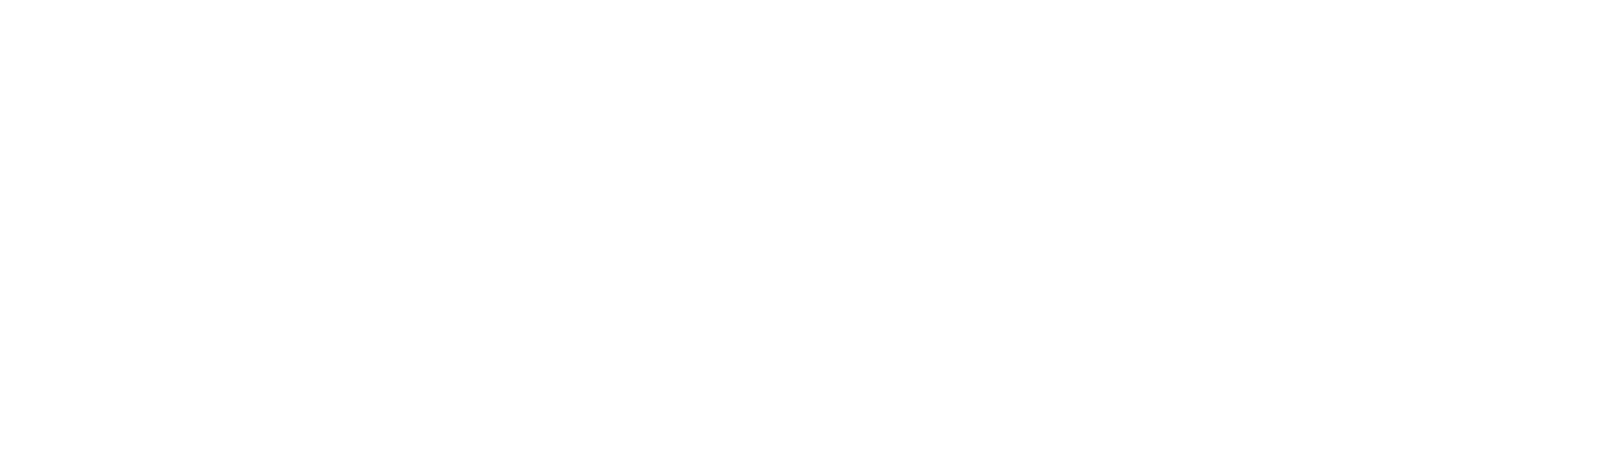 Boise Cascade
 logo grand pour les fonds sombres (PNG transparent)